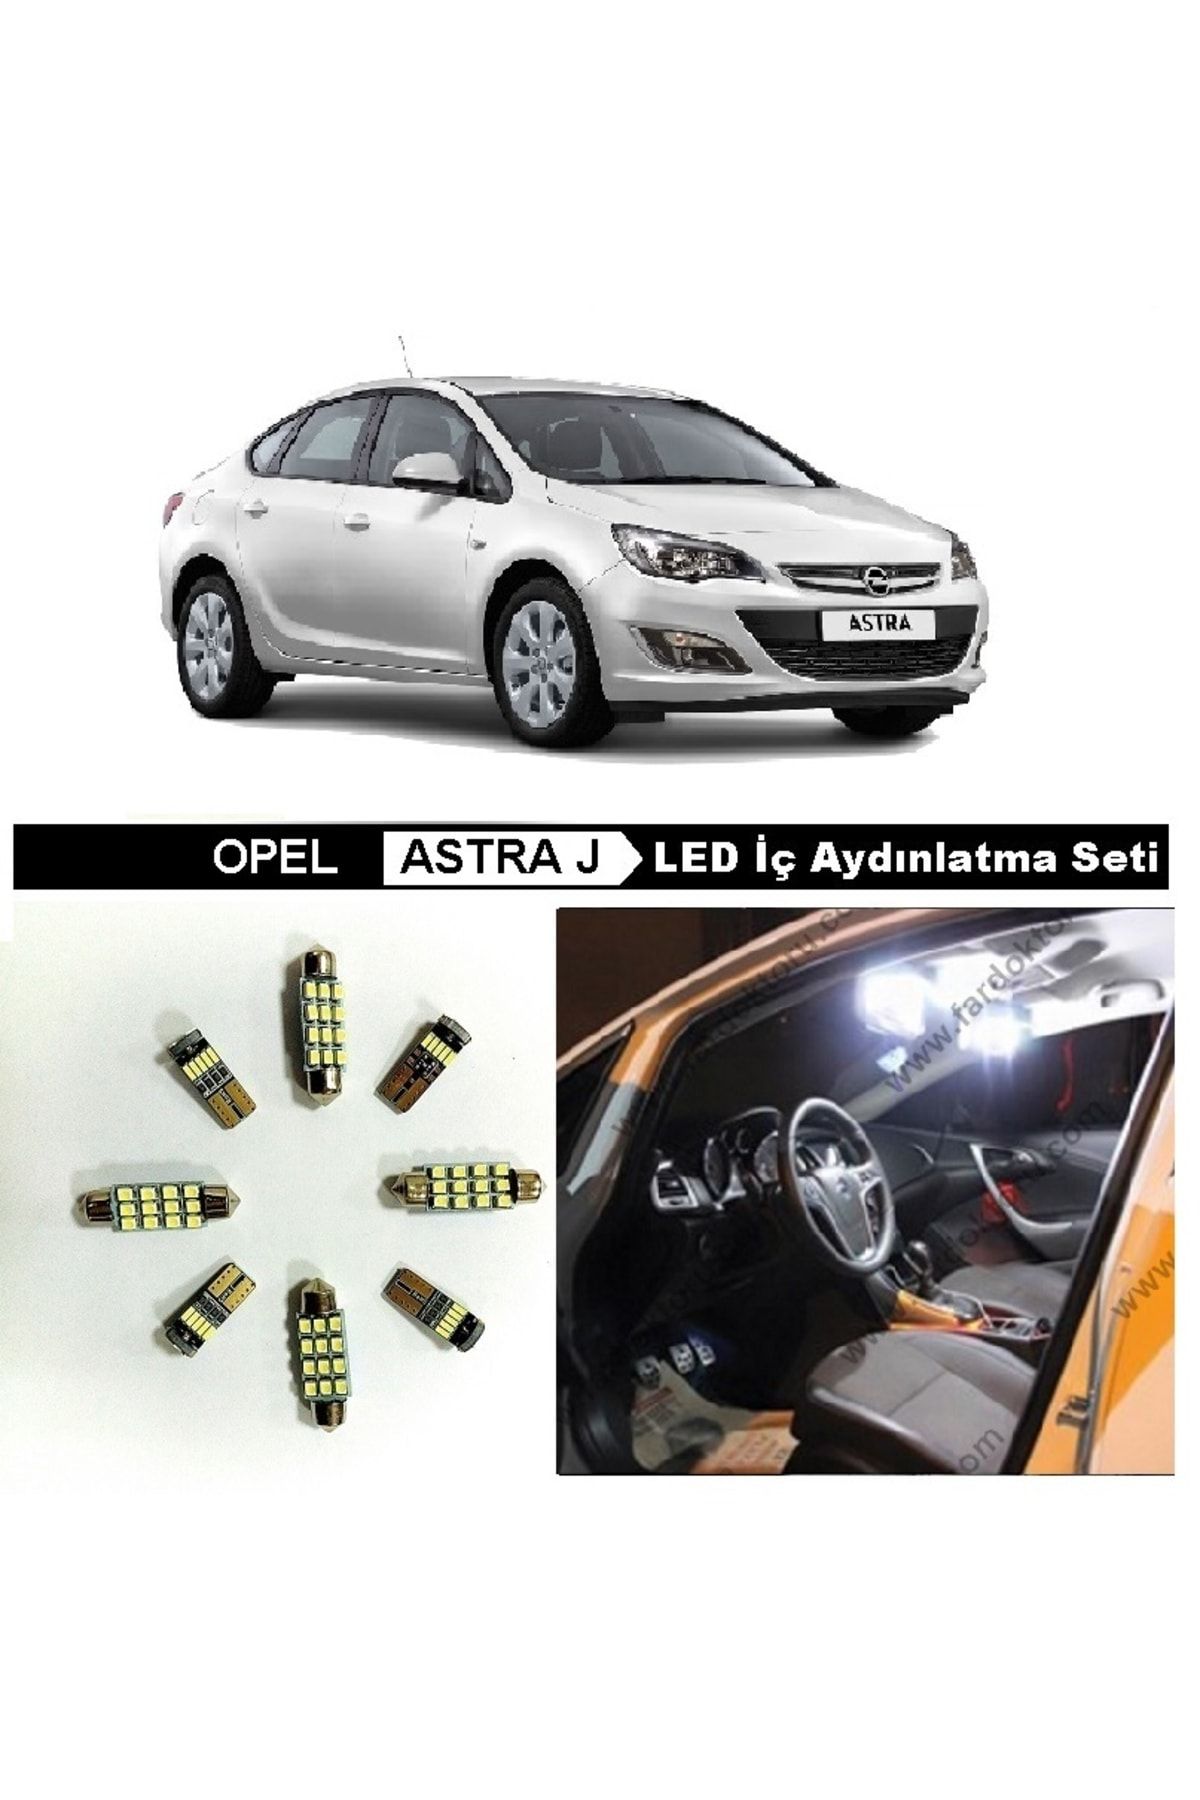 Fardoktoru Opel Astra J Beyaz Led Iç Aydınlatma Ampul Seti